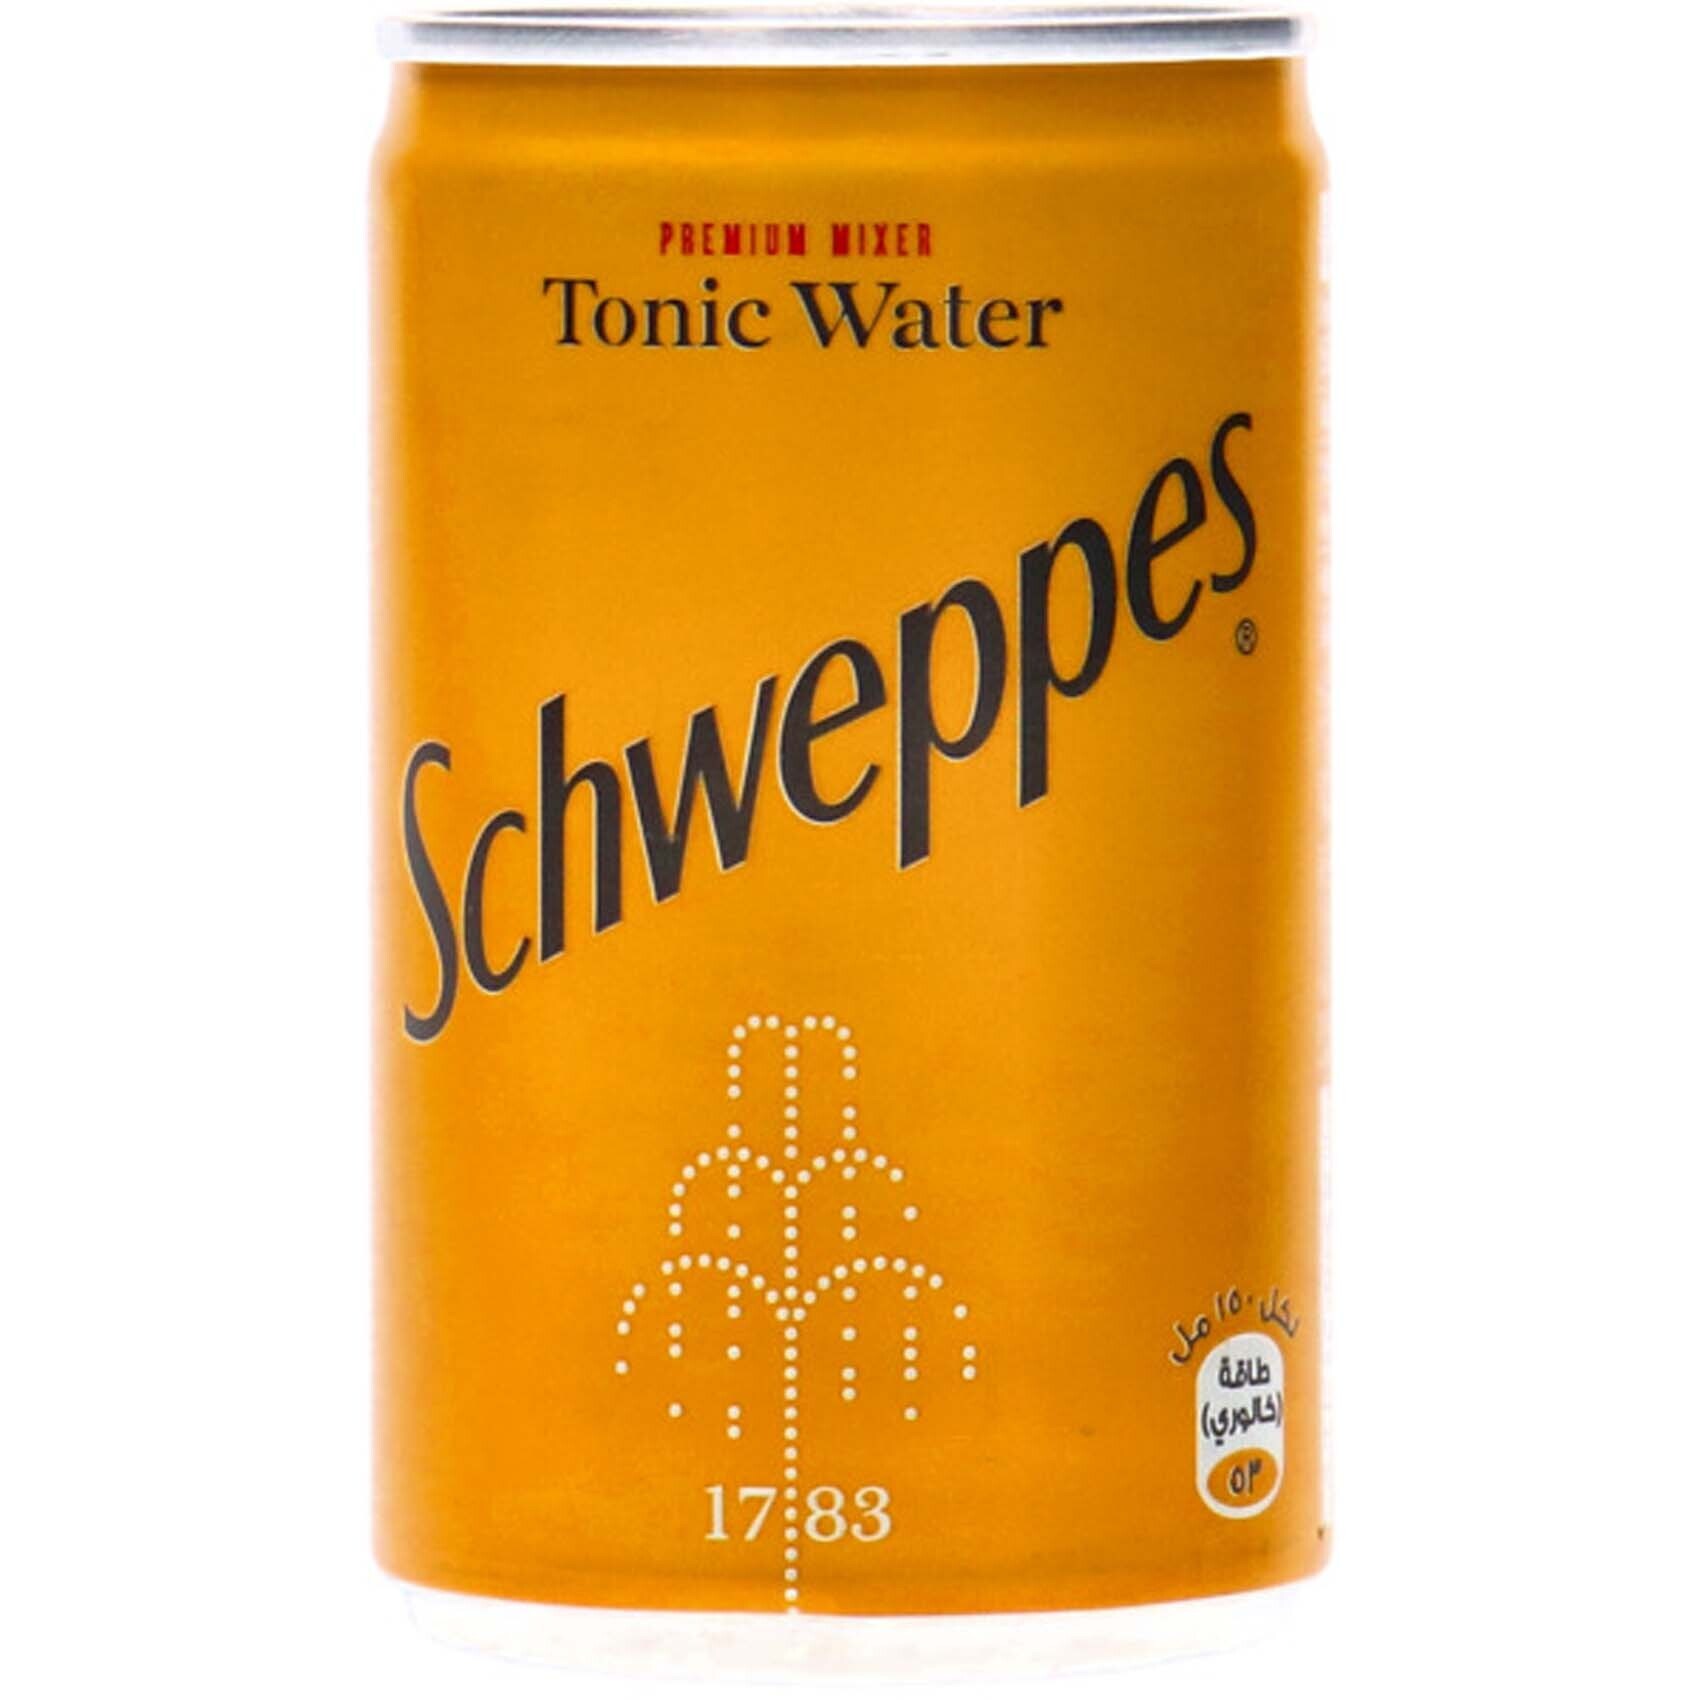 Schweppes premium mixer tonic 150 ml